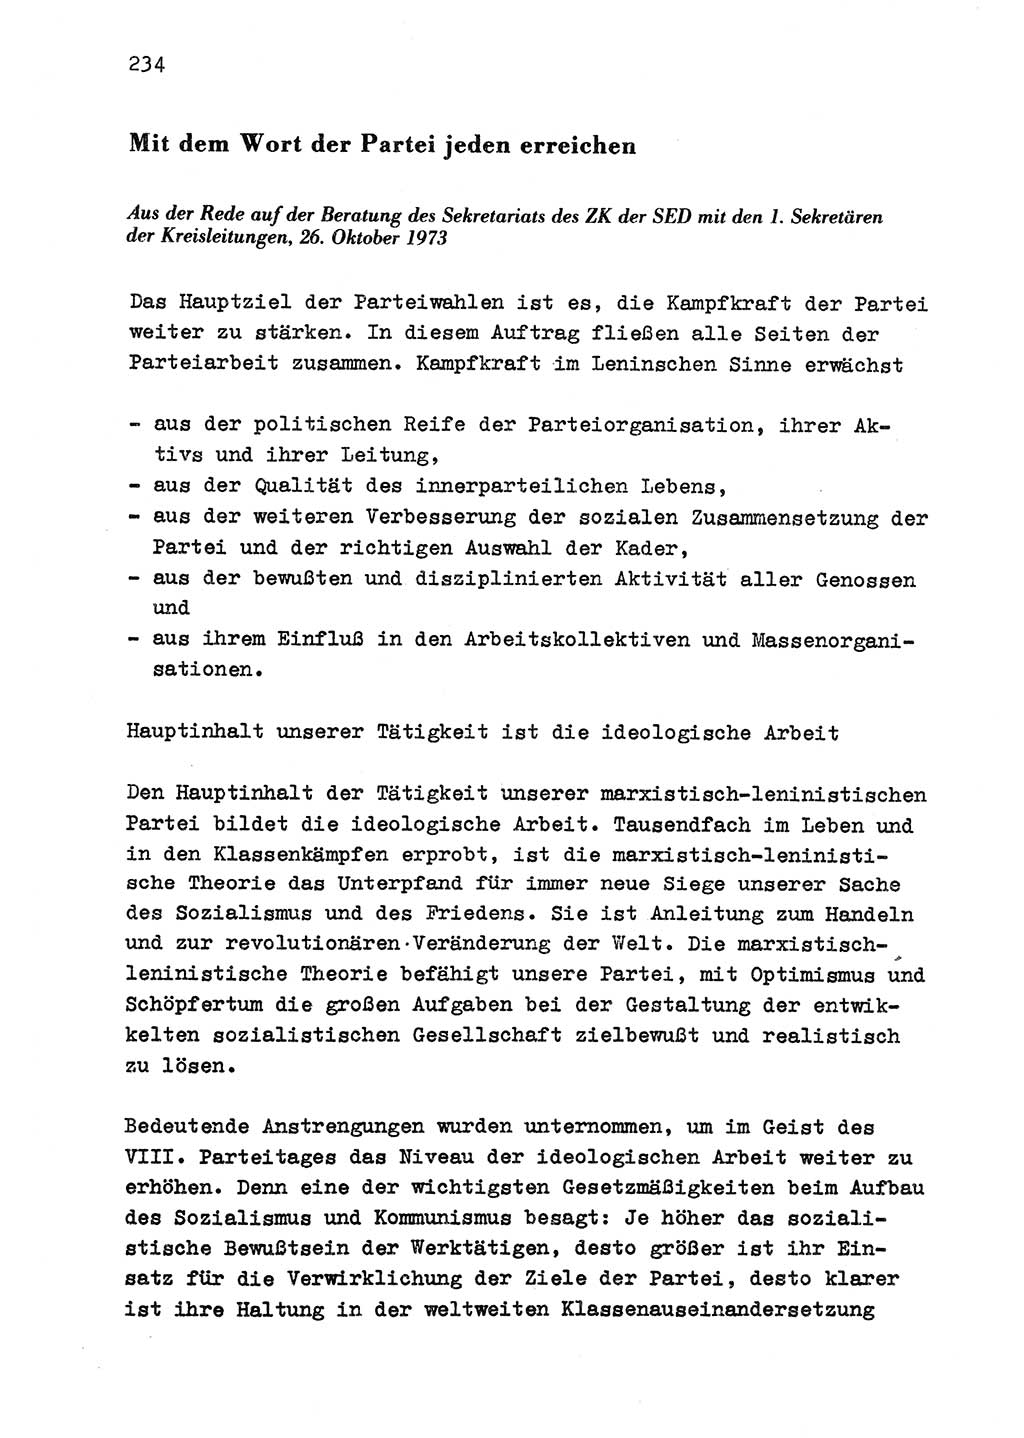 Zu Fragen der Parteiarbeit [Sozialistische Einheitspartei Deutschlands (SED) Deutsche Demokratische Republik (DDR)] 1979, Seite 234 (Fr. PA SED DDR 1979, S. 234)